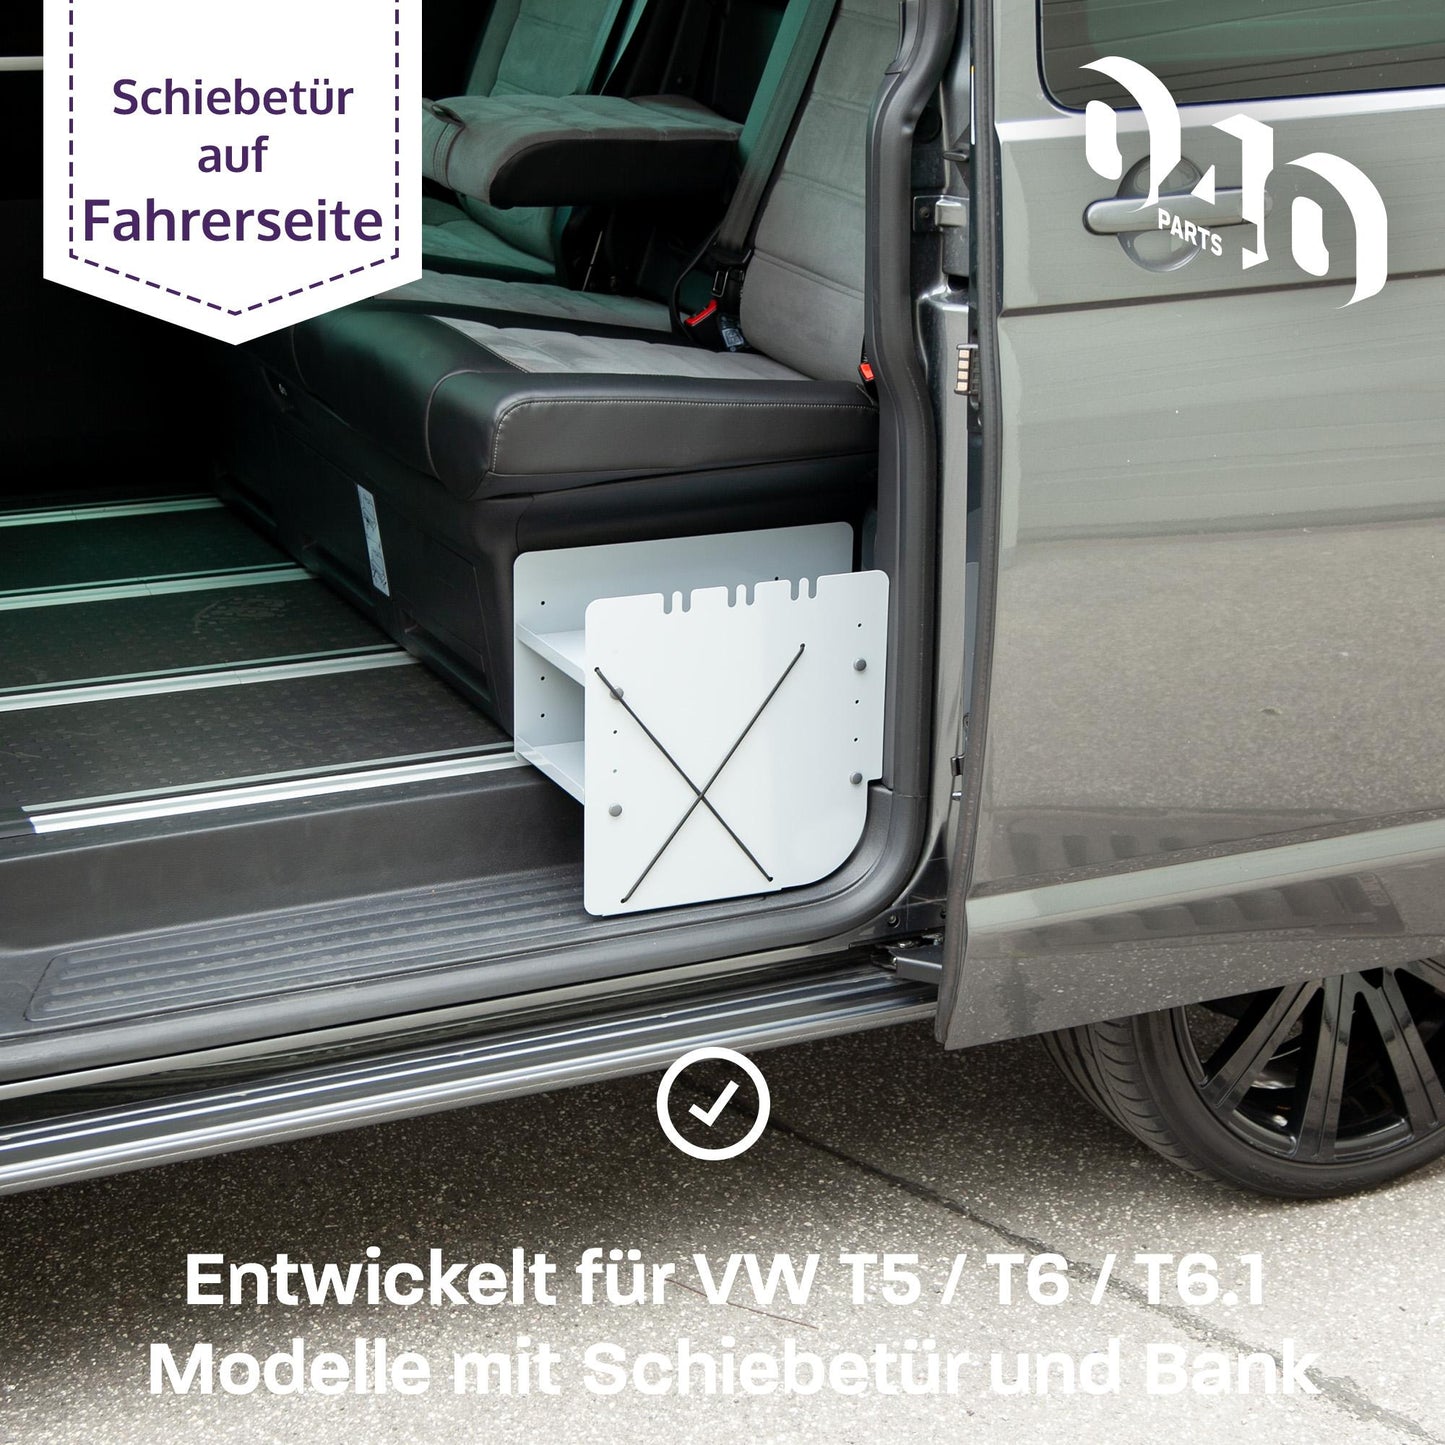 040 Parts Schuhregal GRAU FAHRERSEITE Zubehör passend für VW T5 T6 T6.1 California Schuhorganizer Schuhtasche